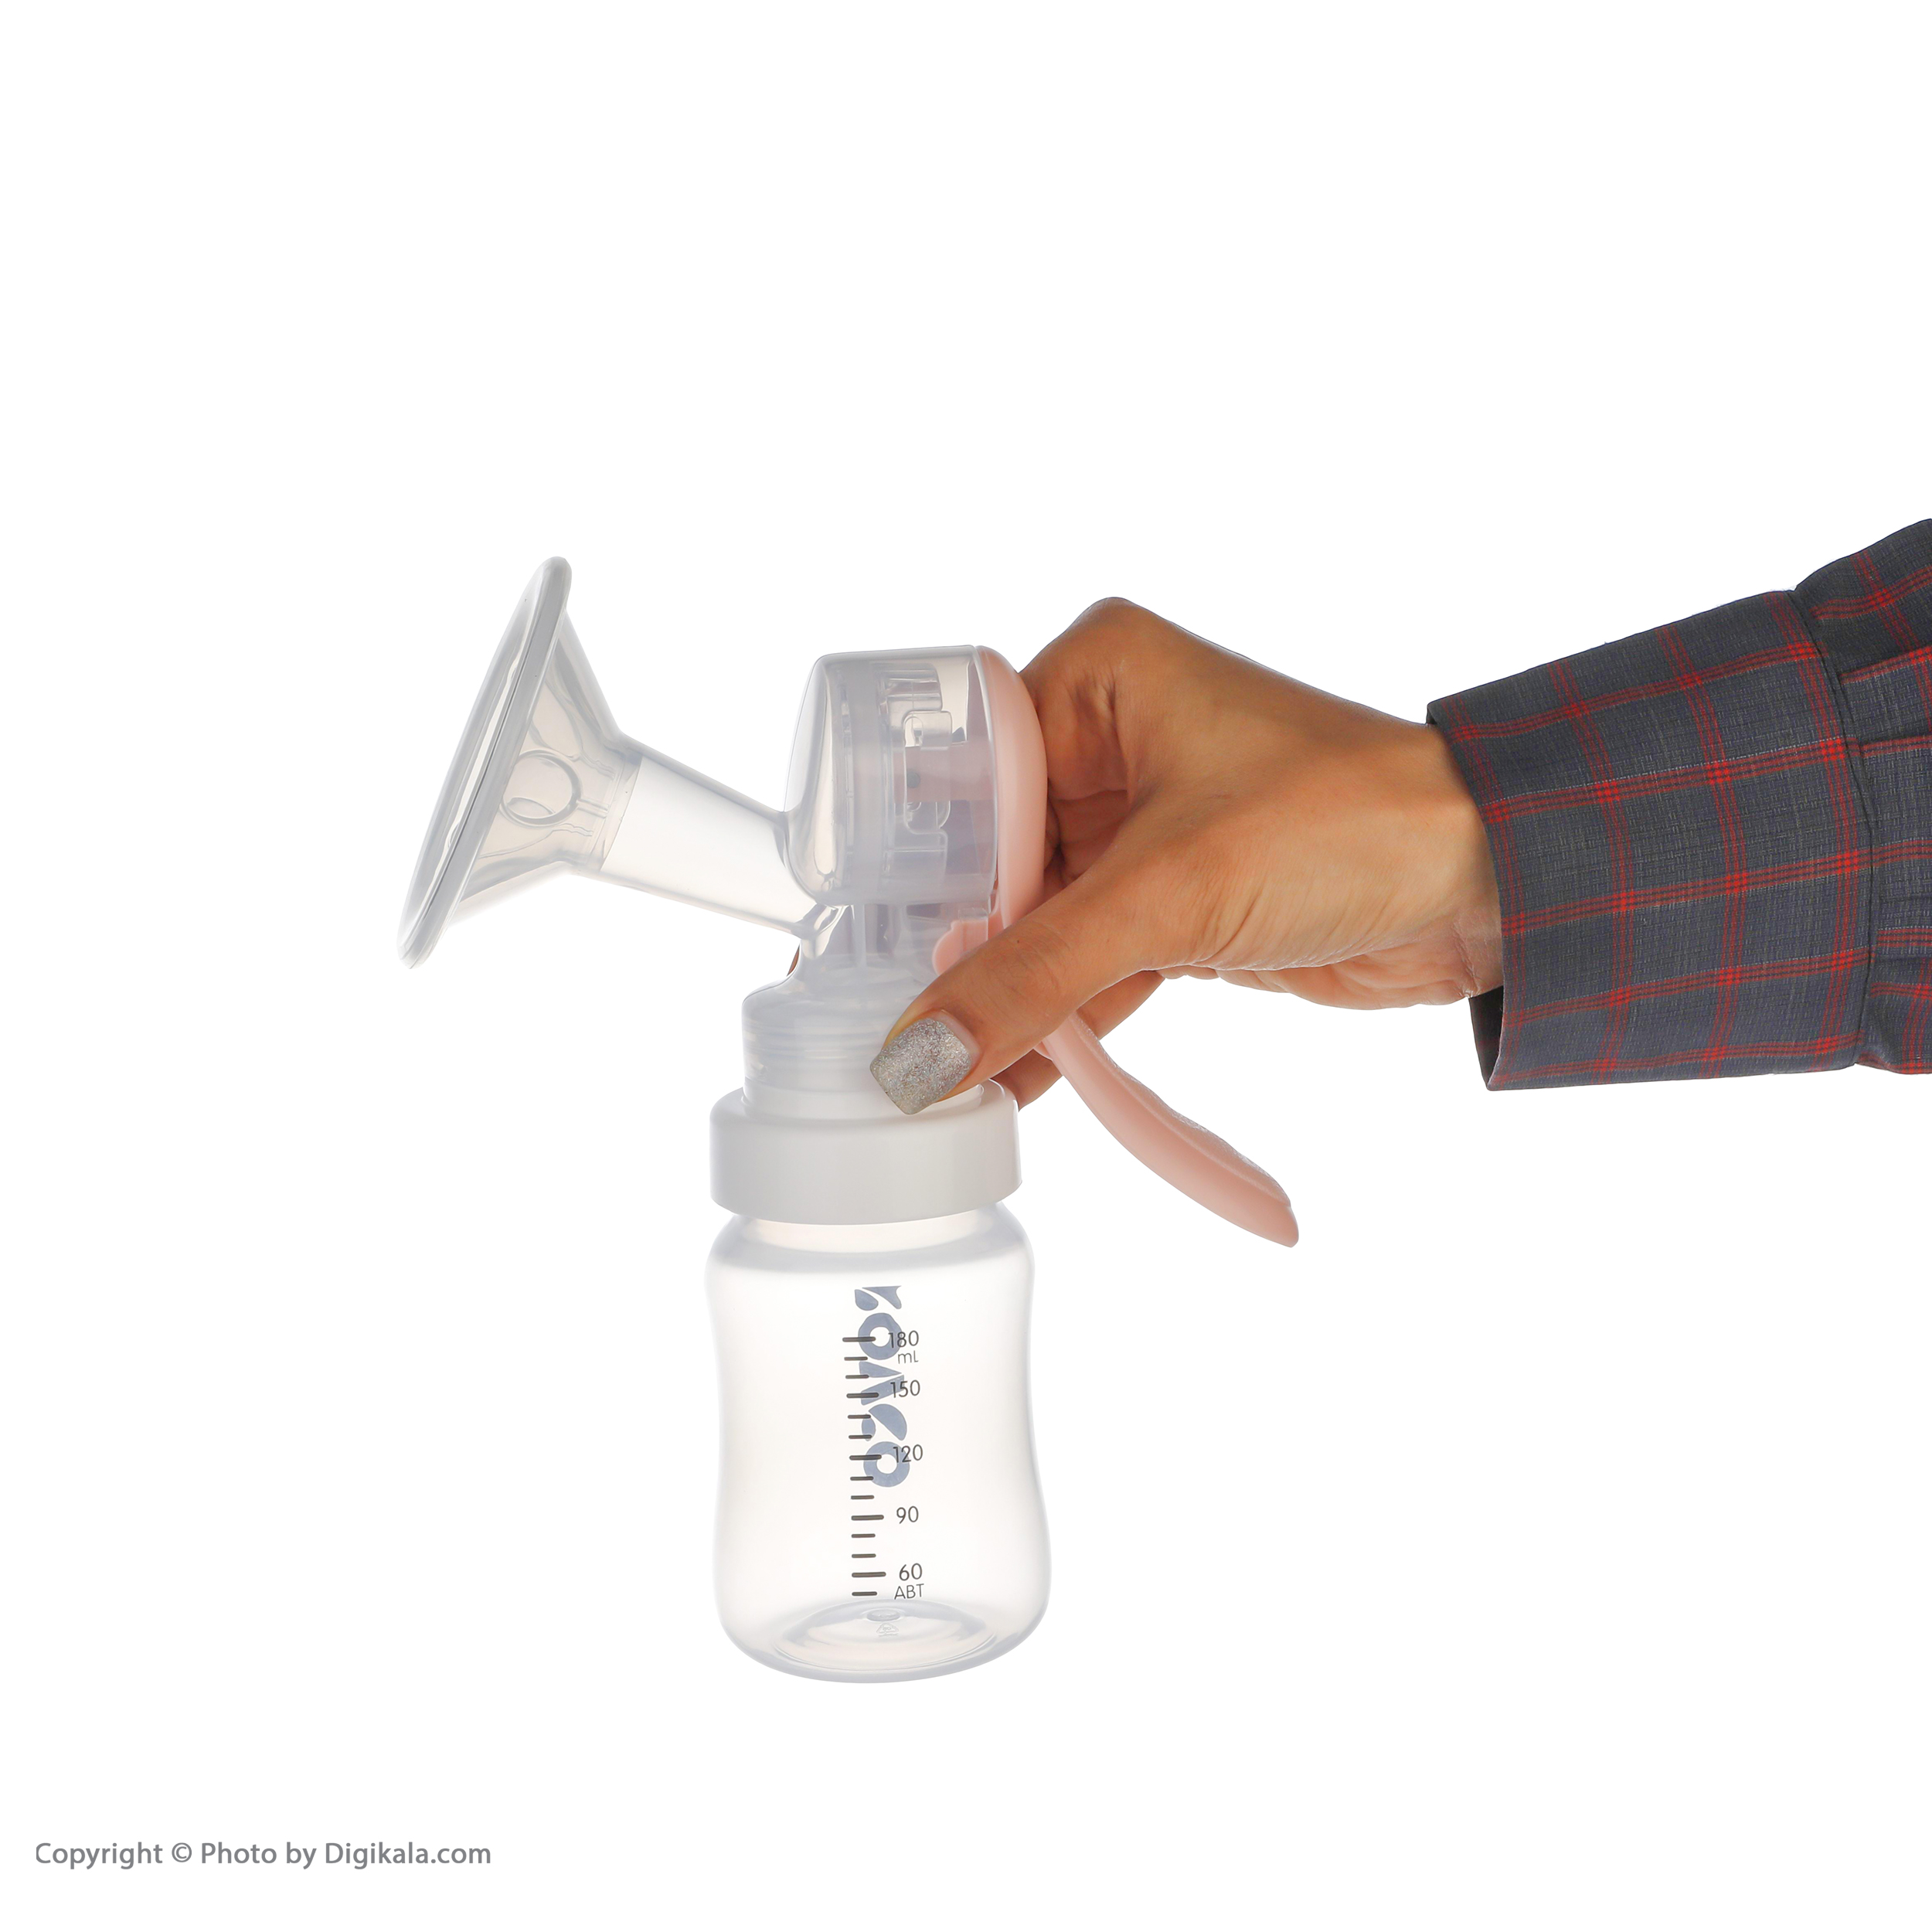 شیردوش دستی رووکو مدل Rk-3600